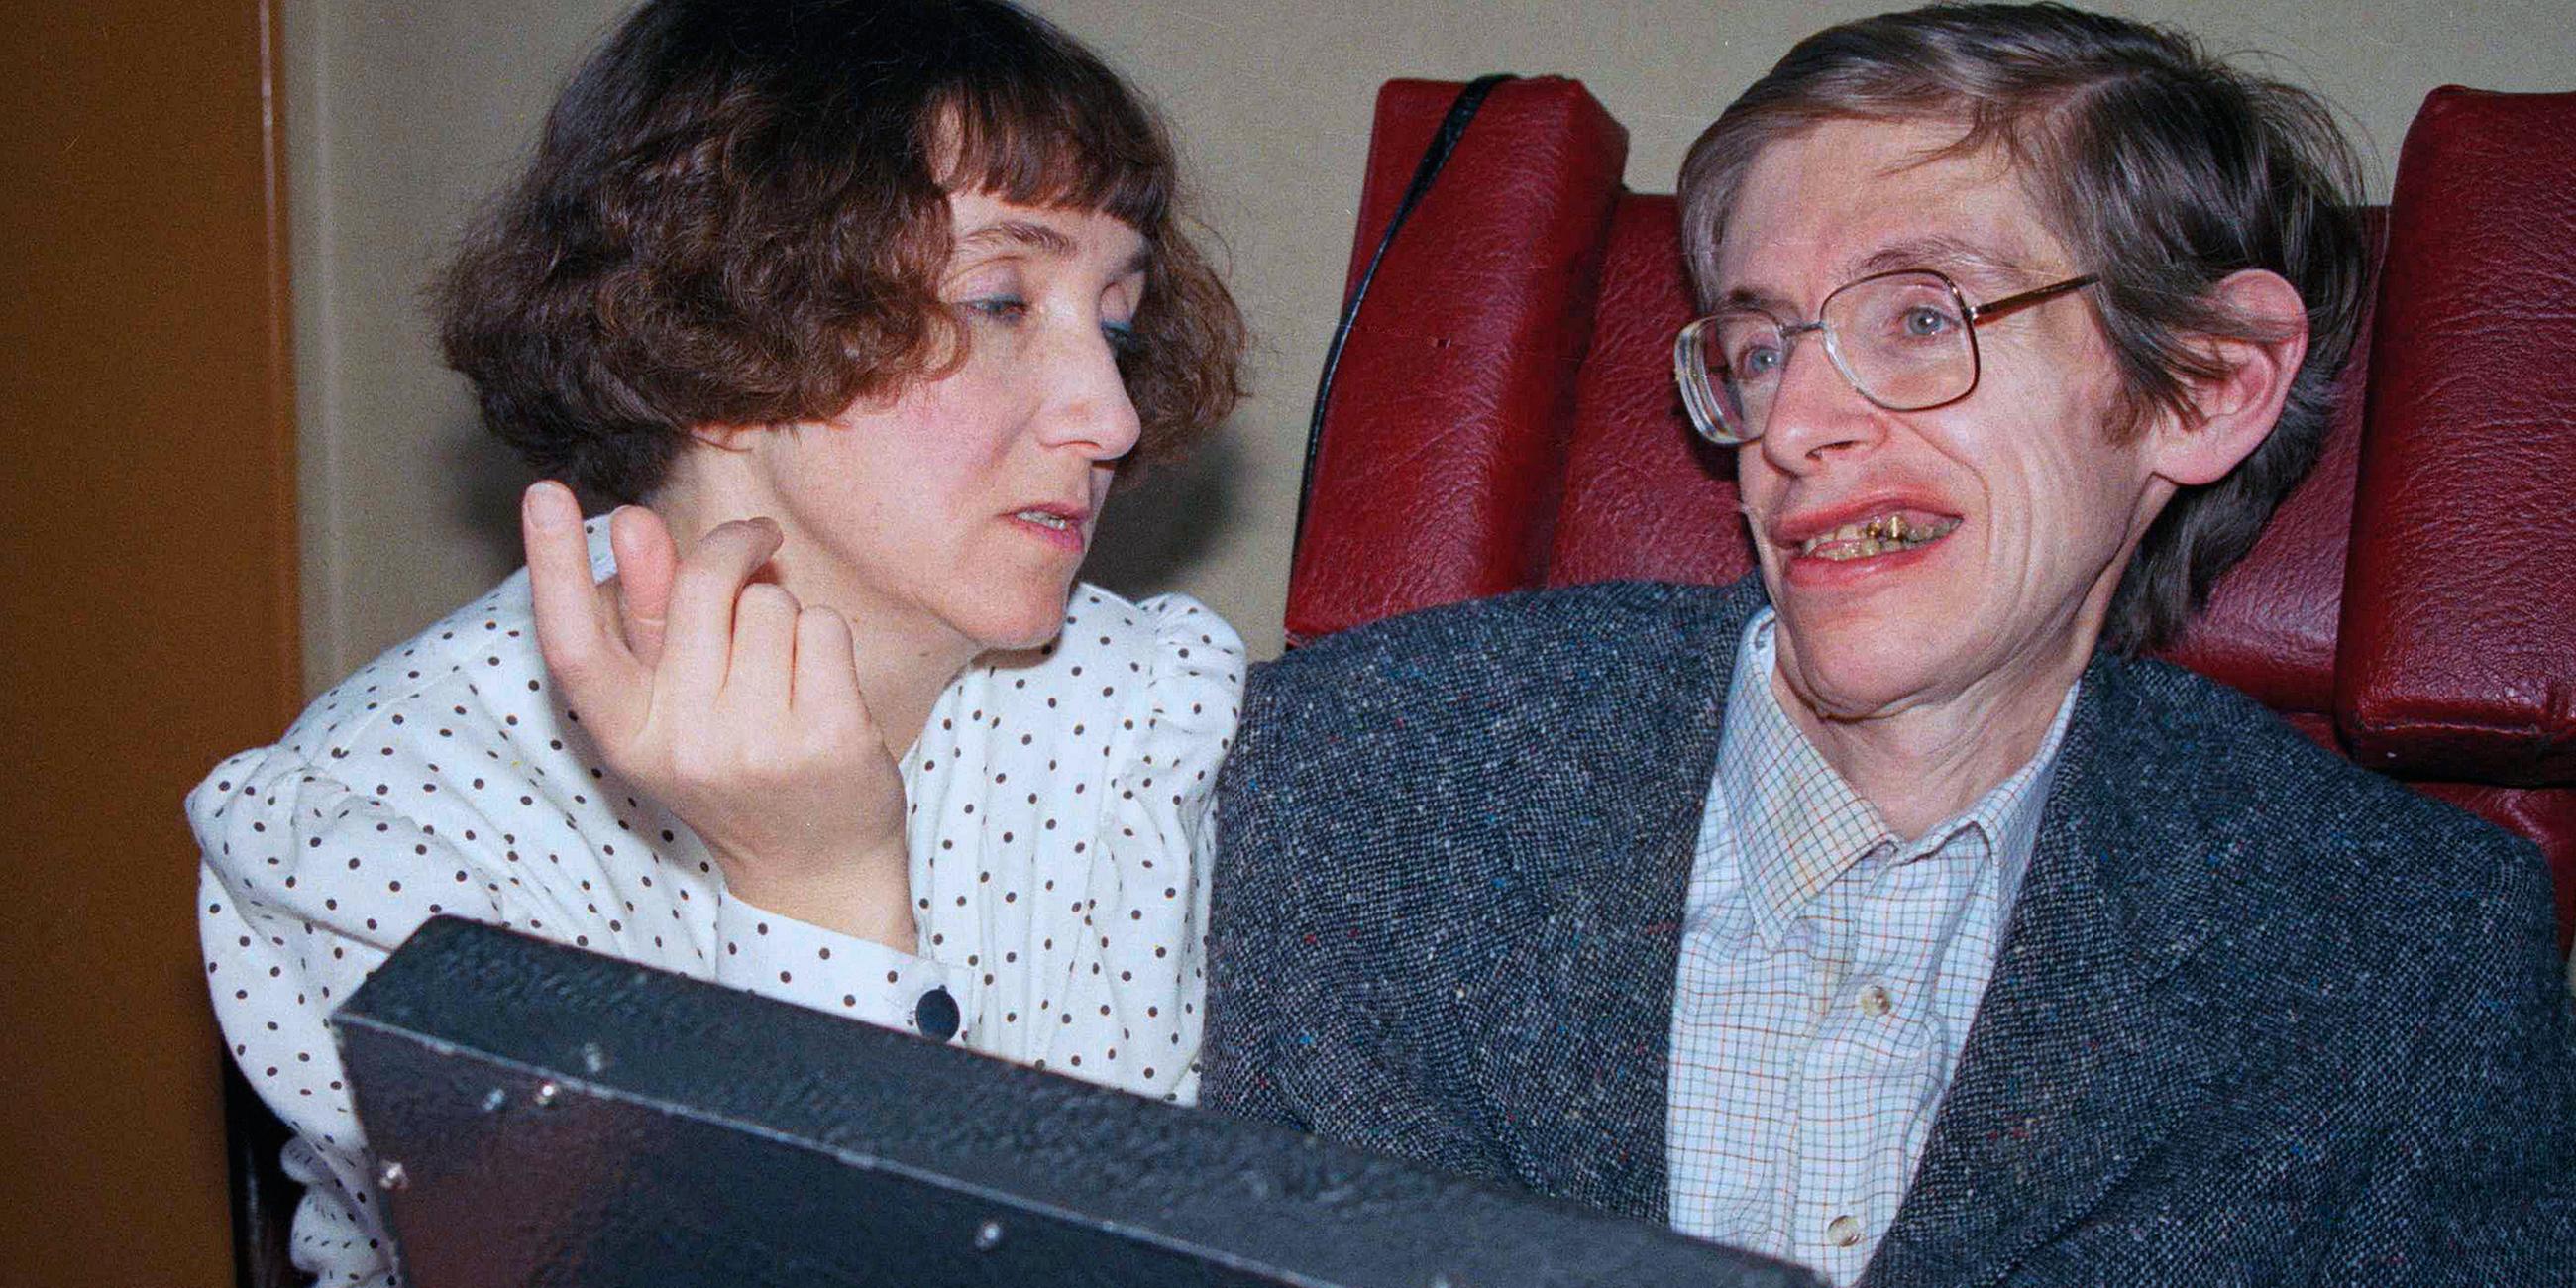 Archiv: Der britische Physiker Stephen Hawking beantwortet mit Hilfe eines Computers und seiner damaligen Frau Jane fragen von Journalisten